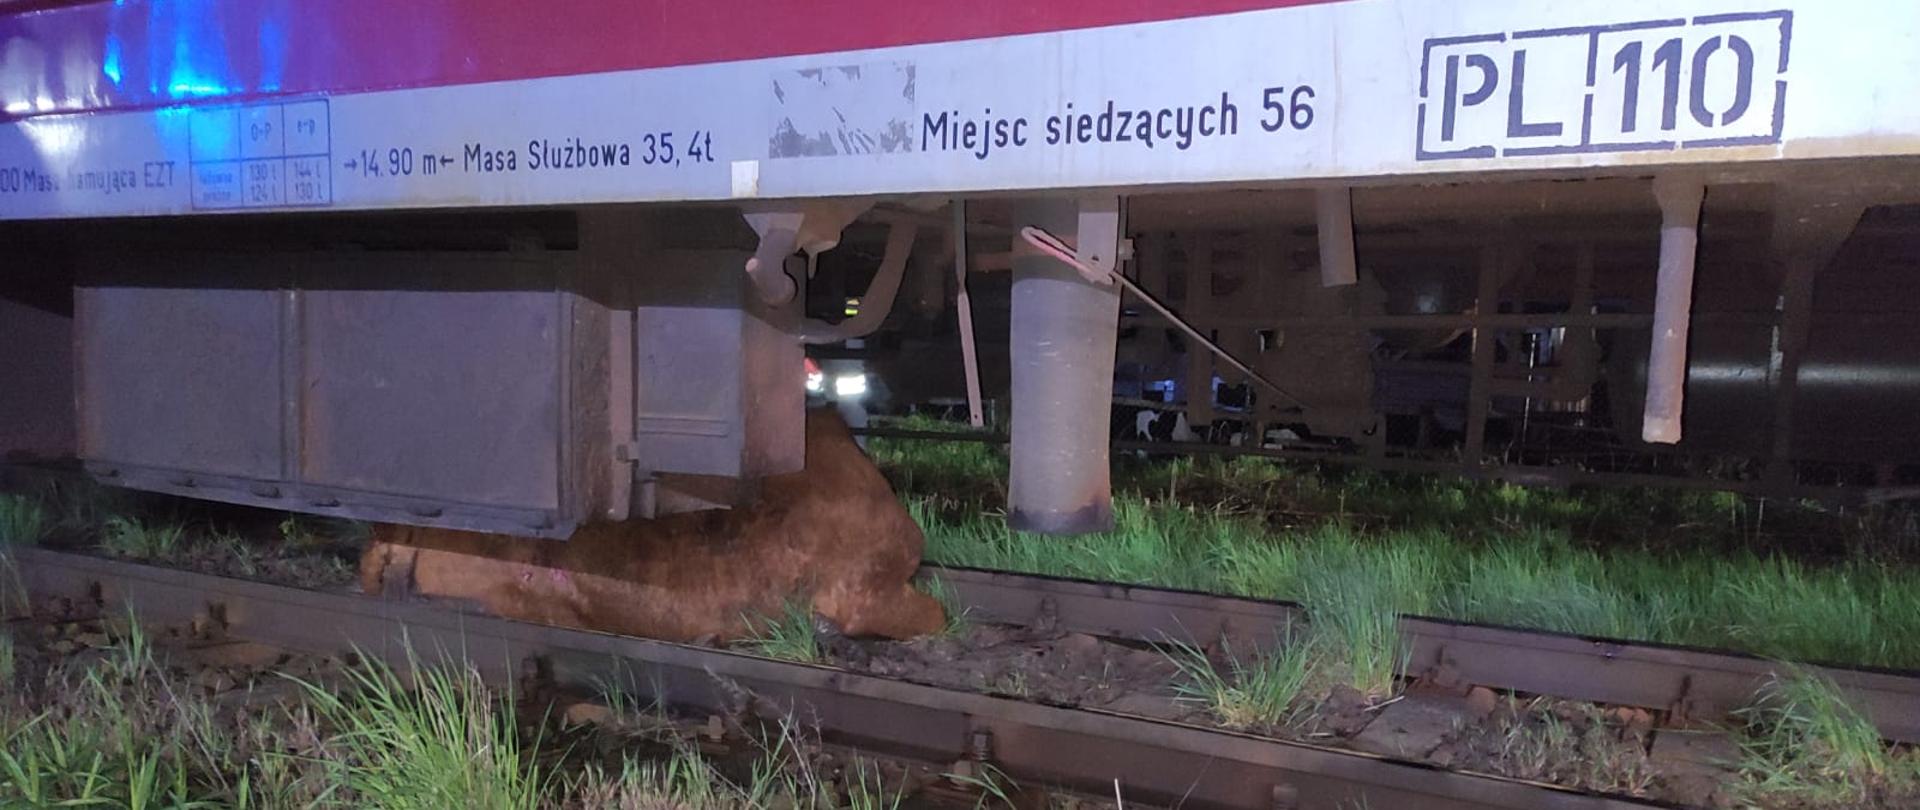 Na zdjęciu widać krowę znajdującą się pod wagonem pociągu pasażerskiego. 